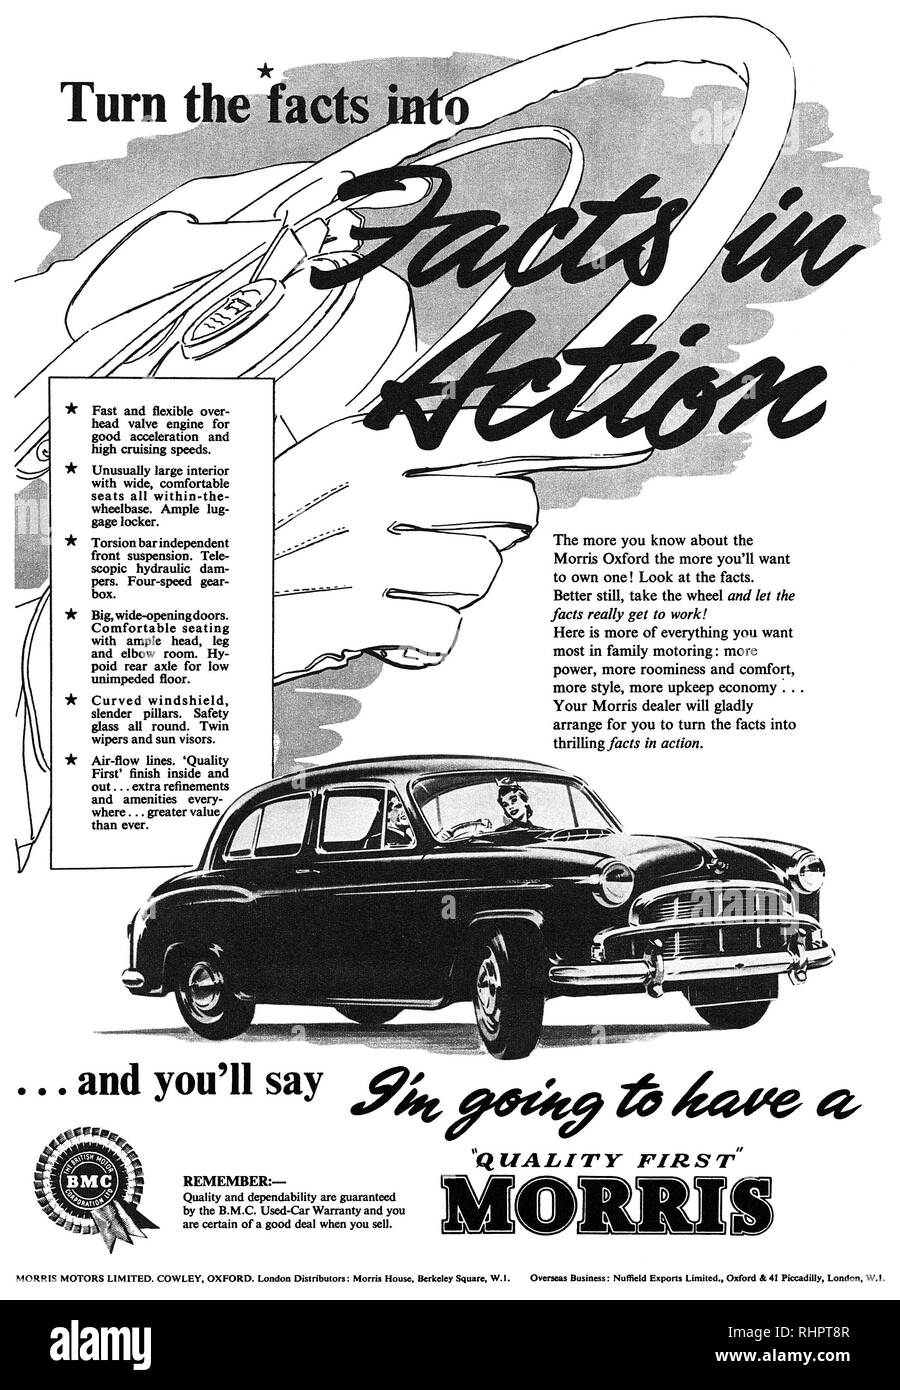 1956 anuncio británico para el Morris Oxford el automóvil. Foto de stock